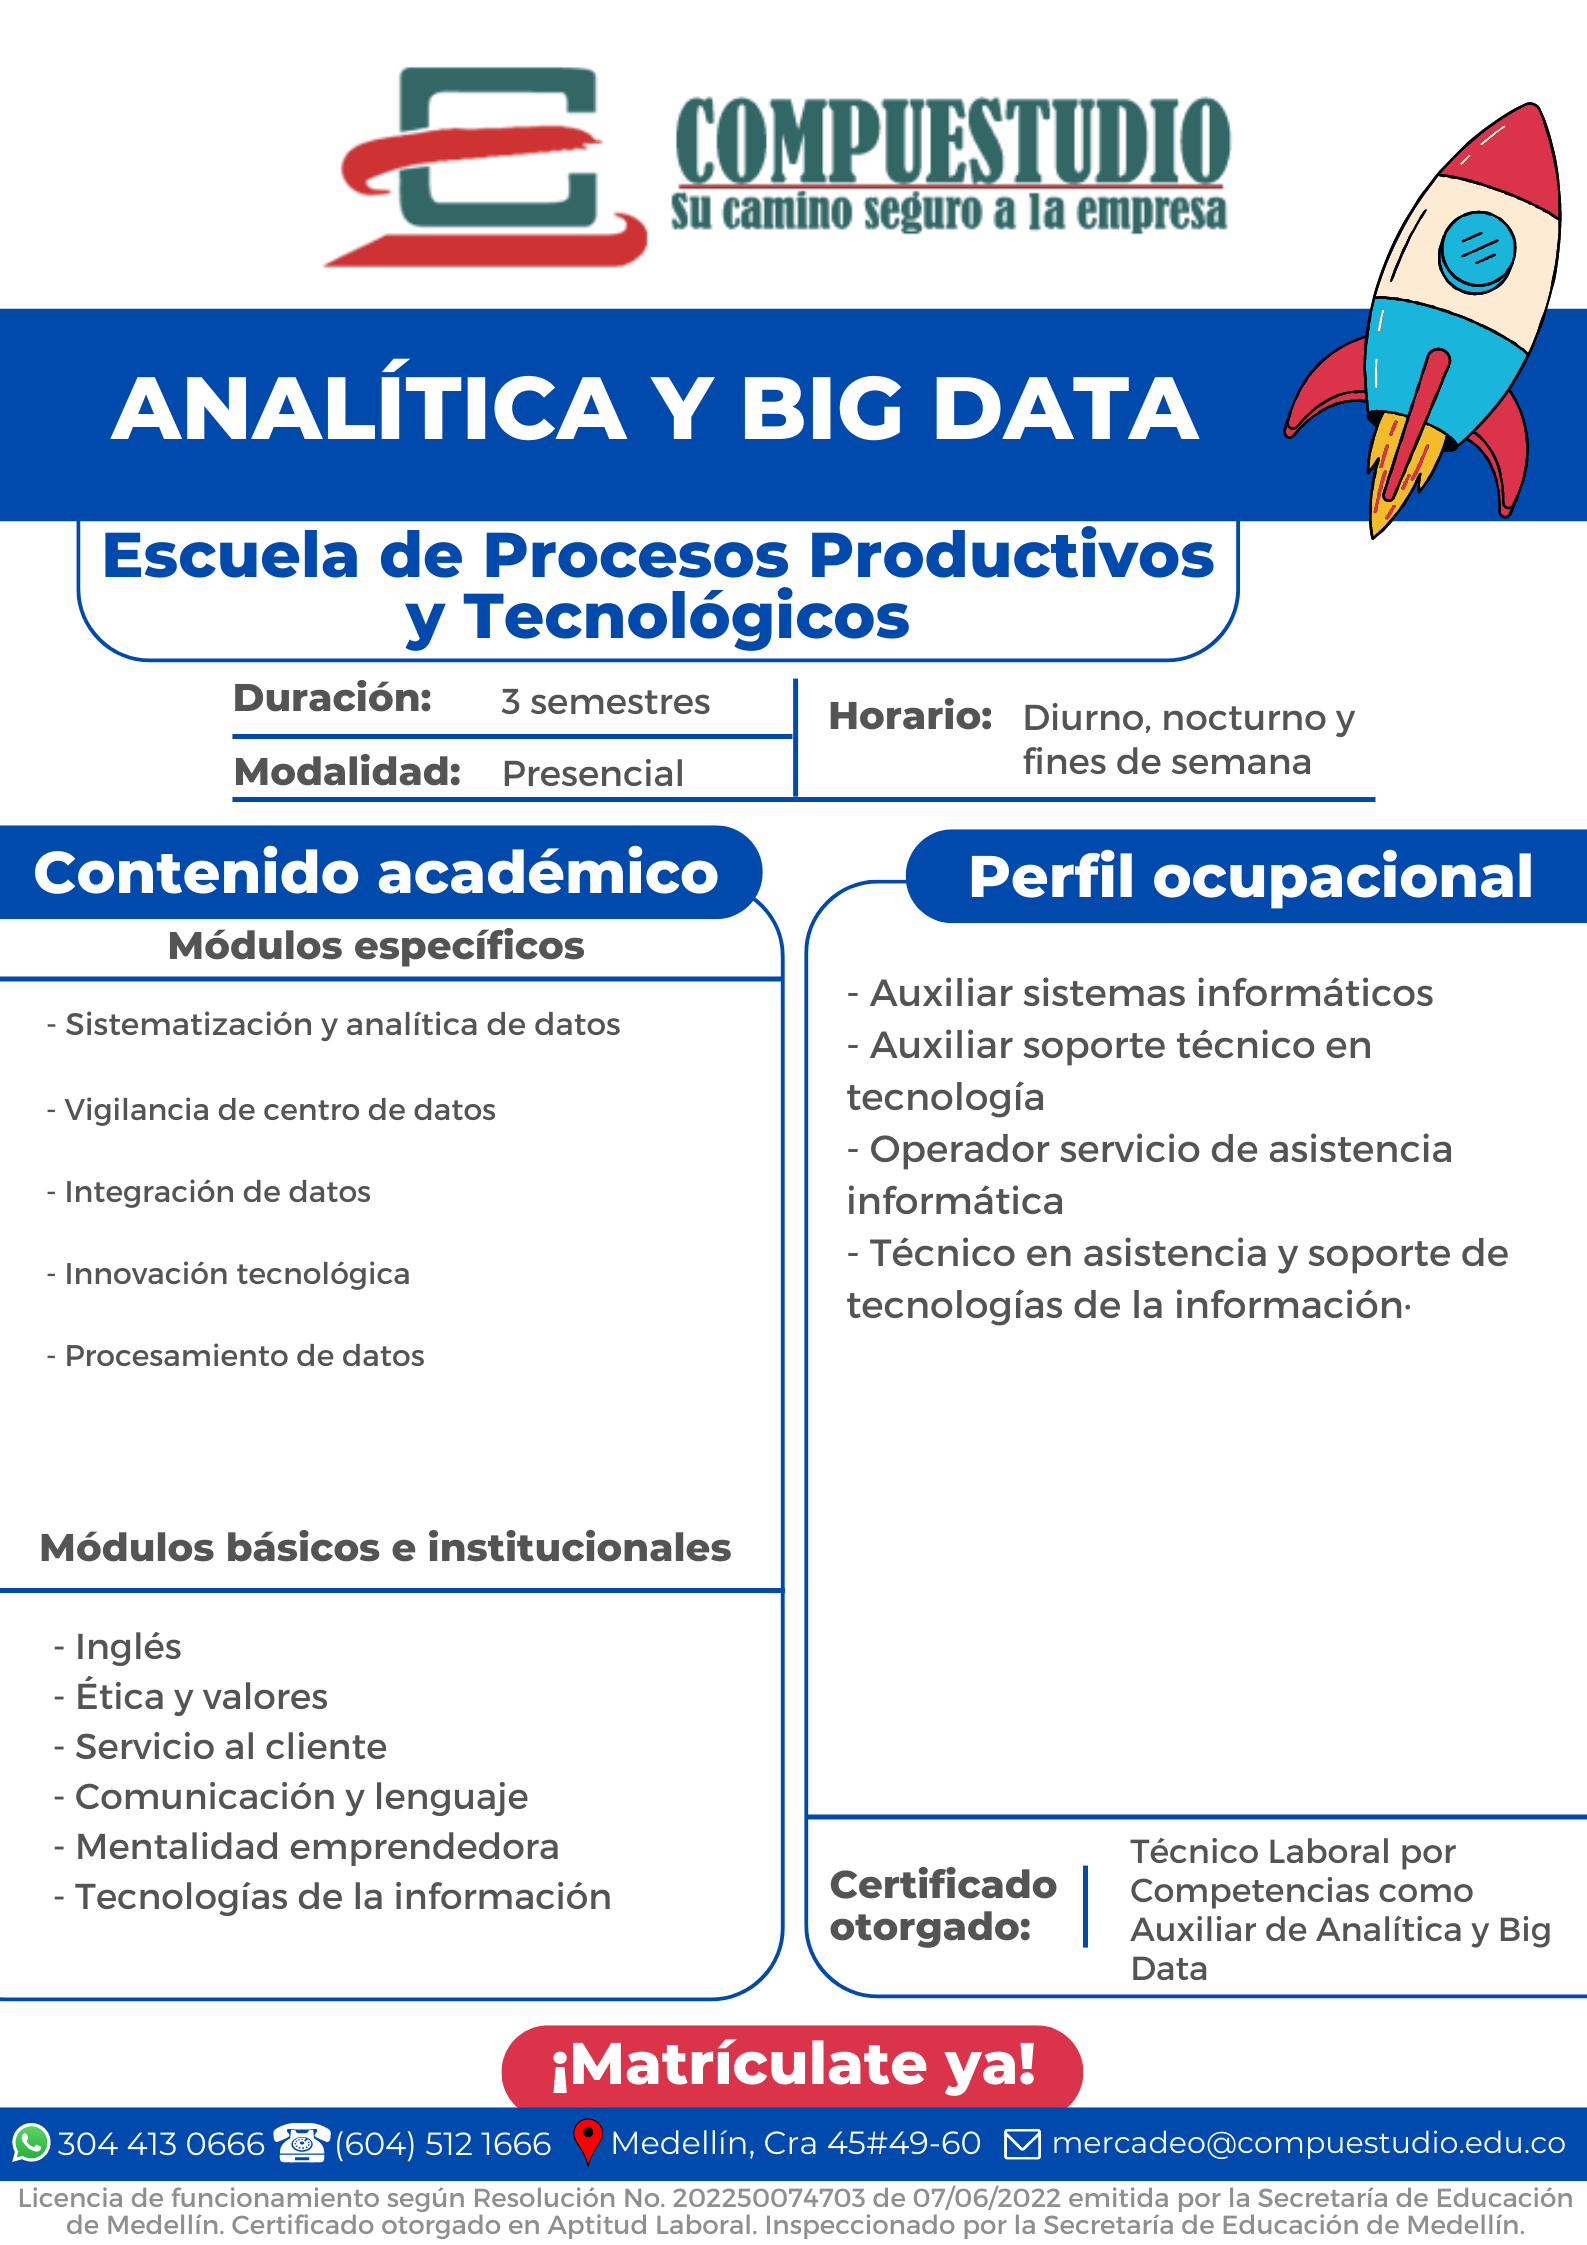 Analítica y Big Data Compuestudio Medellín